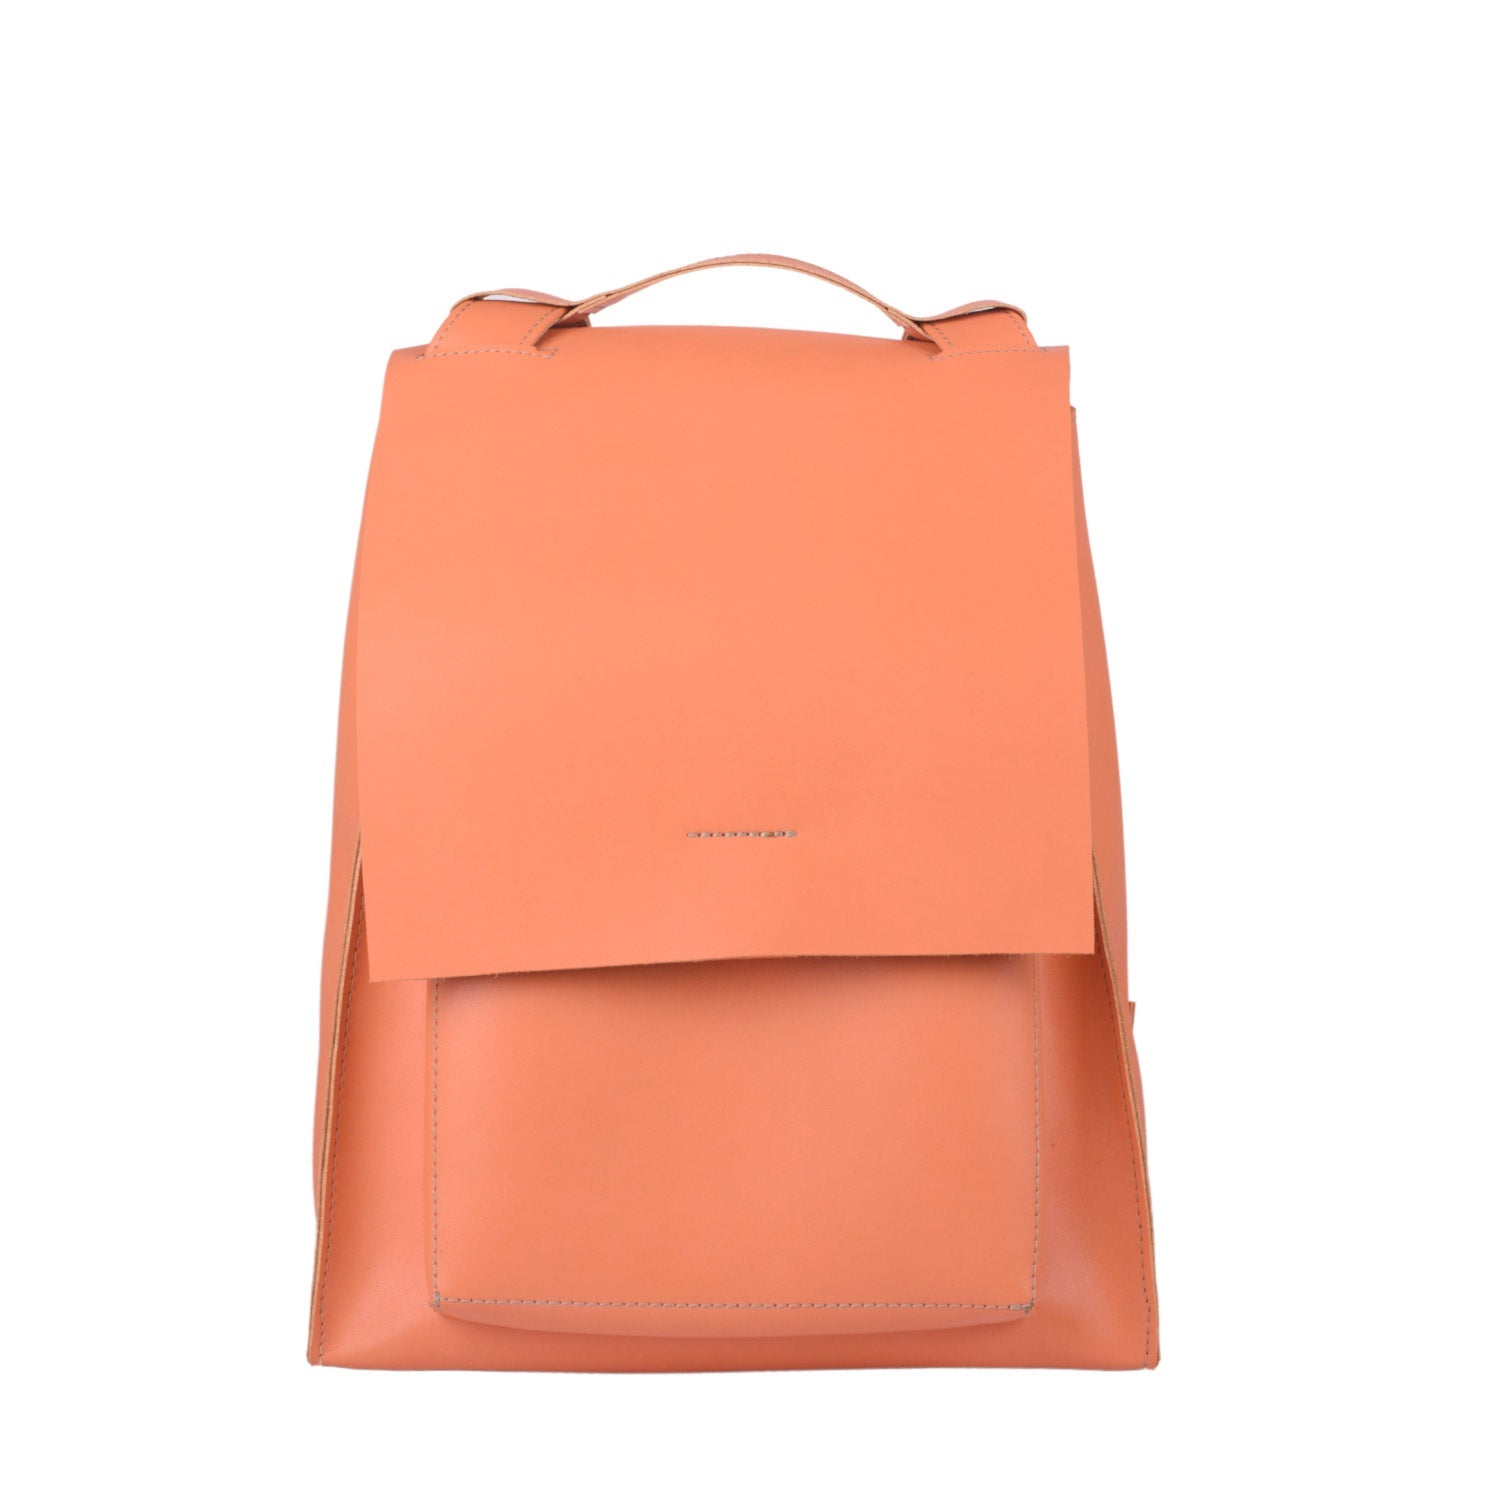 Bärn Tote - Premium Tote Bag from L&E Studio